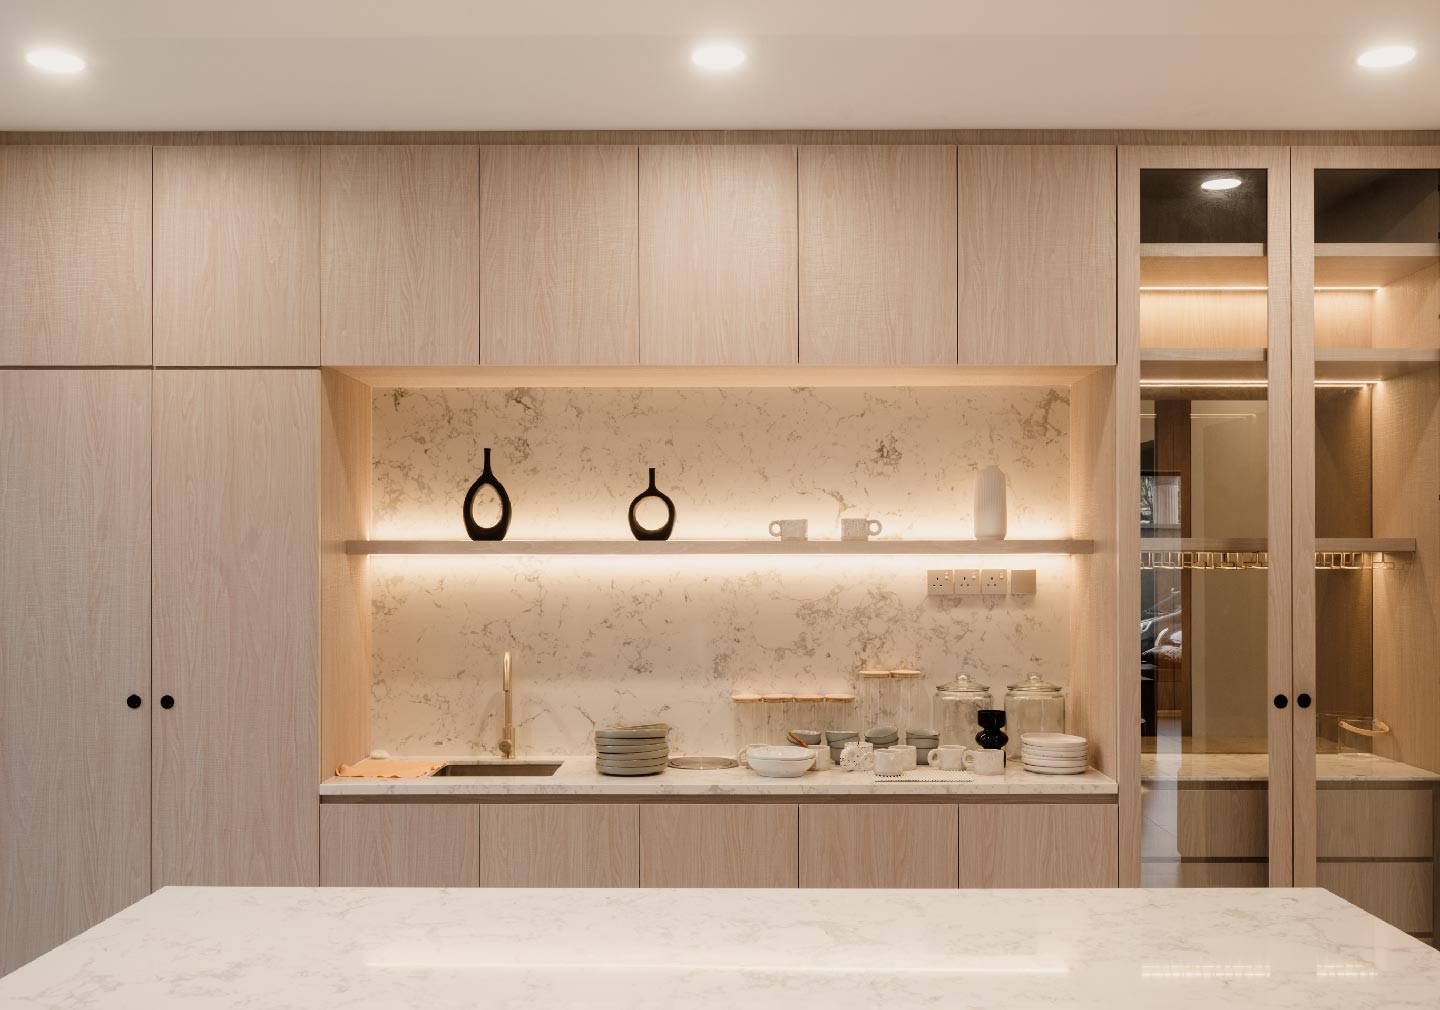 wooden texture kitchen interior design